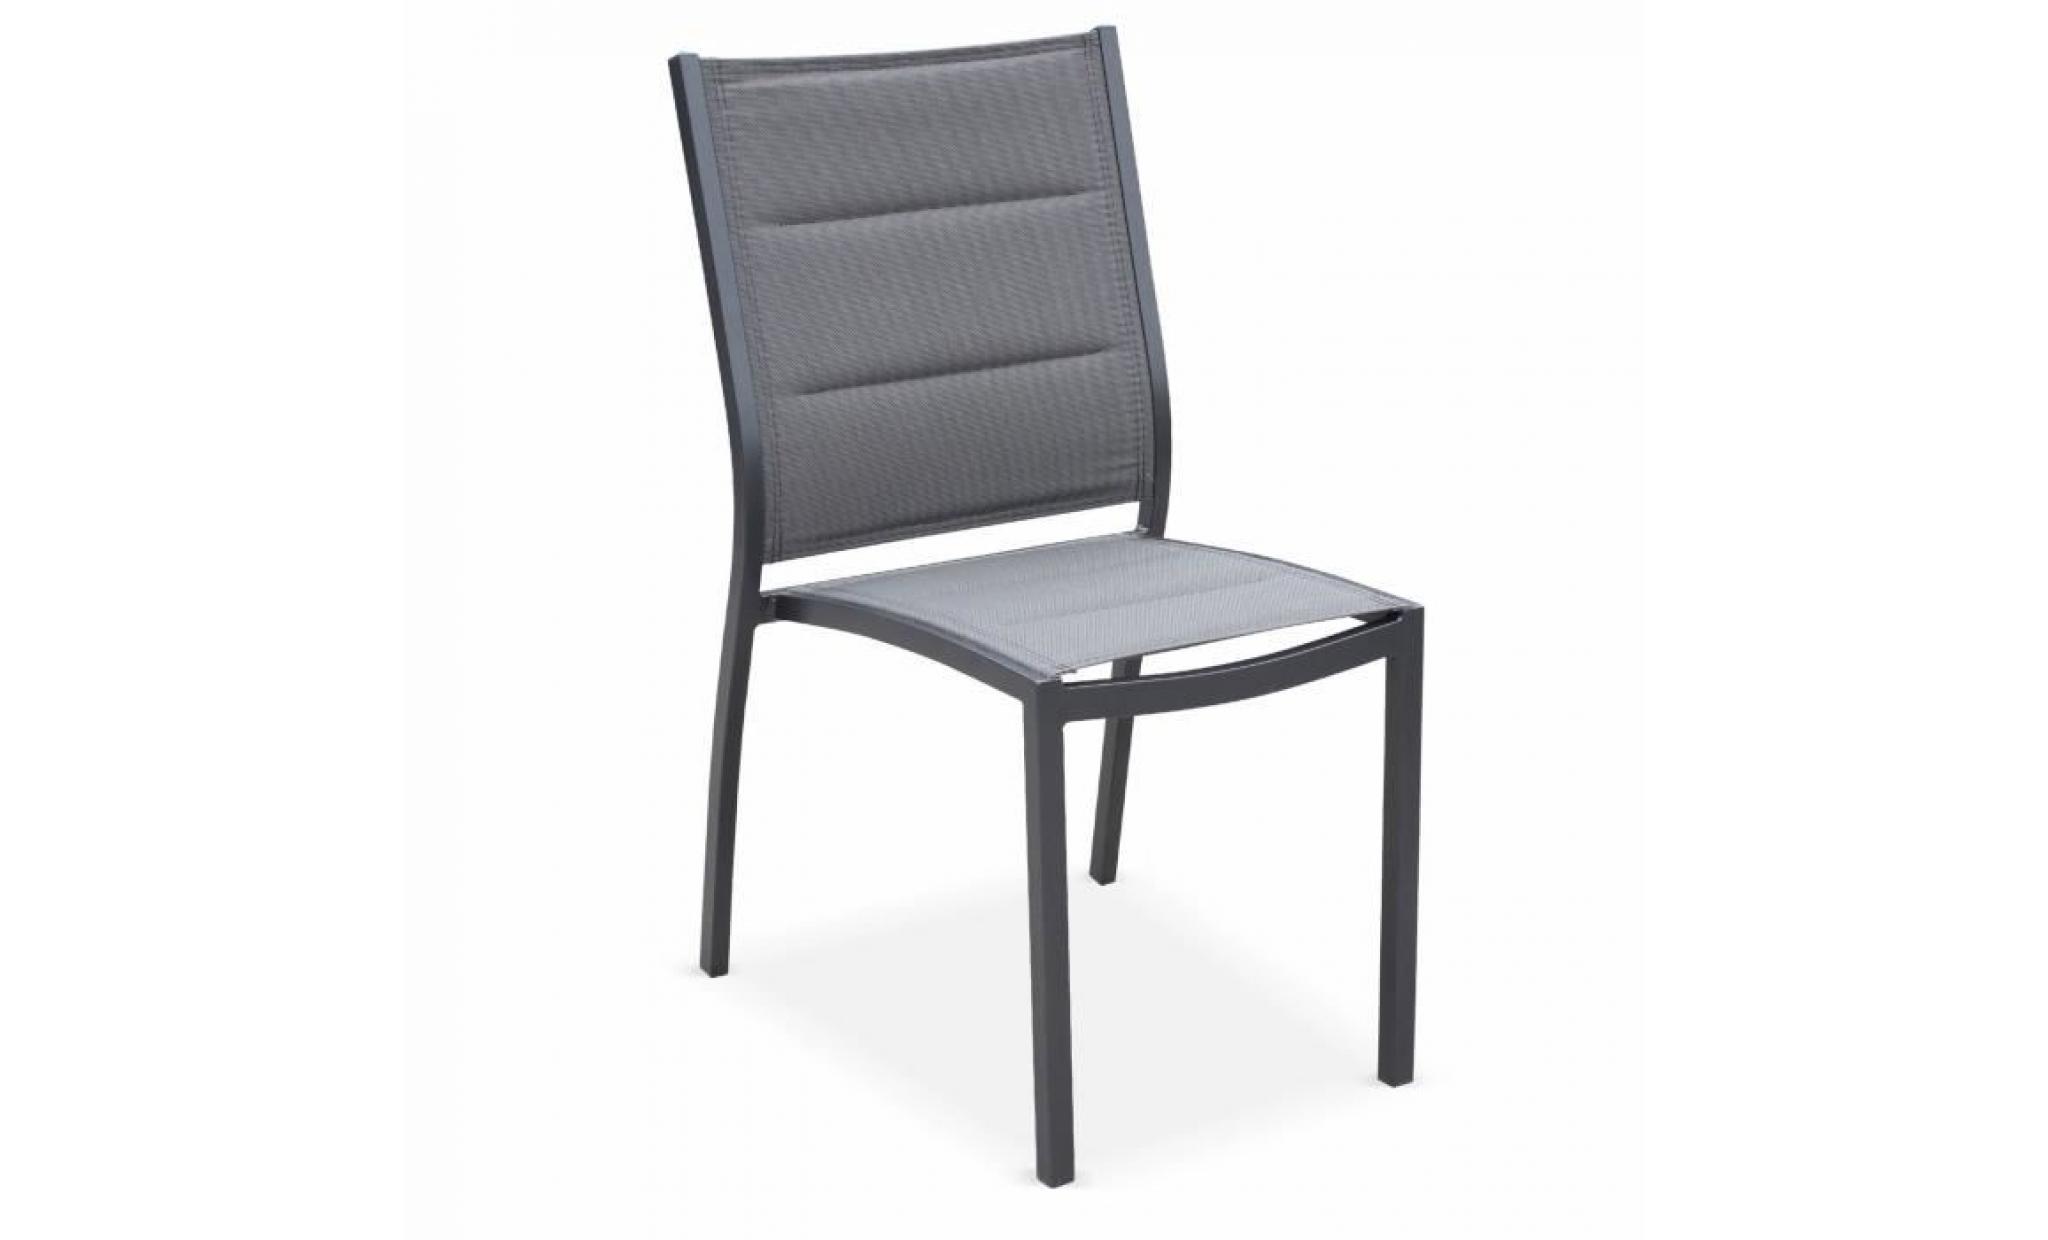 lot de 2 chaises   chicago / odenton anthracite   en aluminium anthracite et textilène gris foncé, empilables pas cher